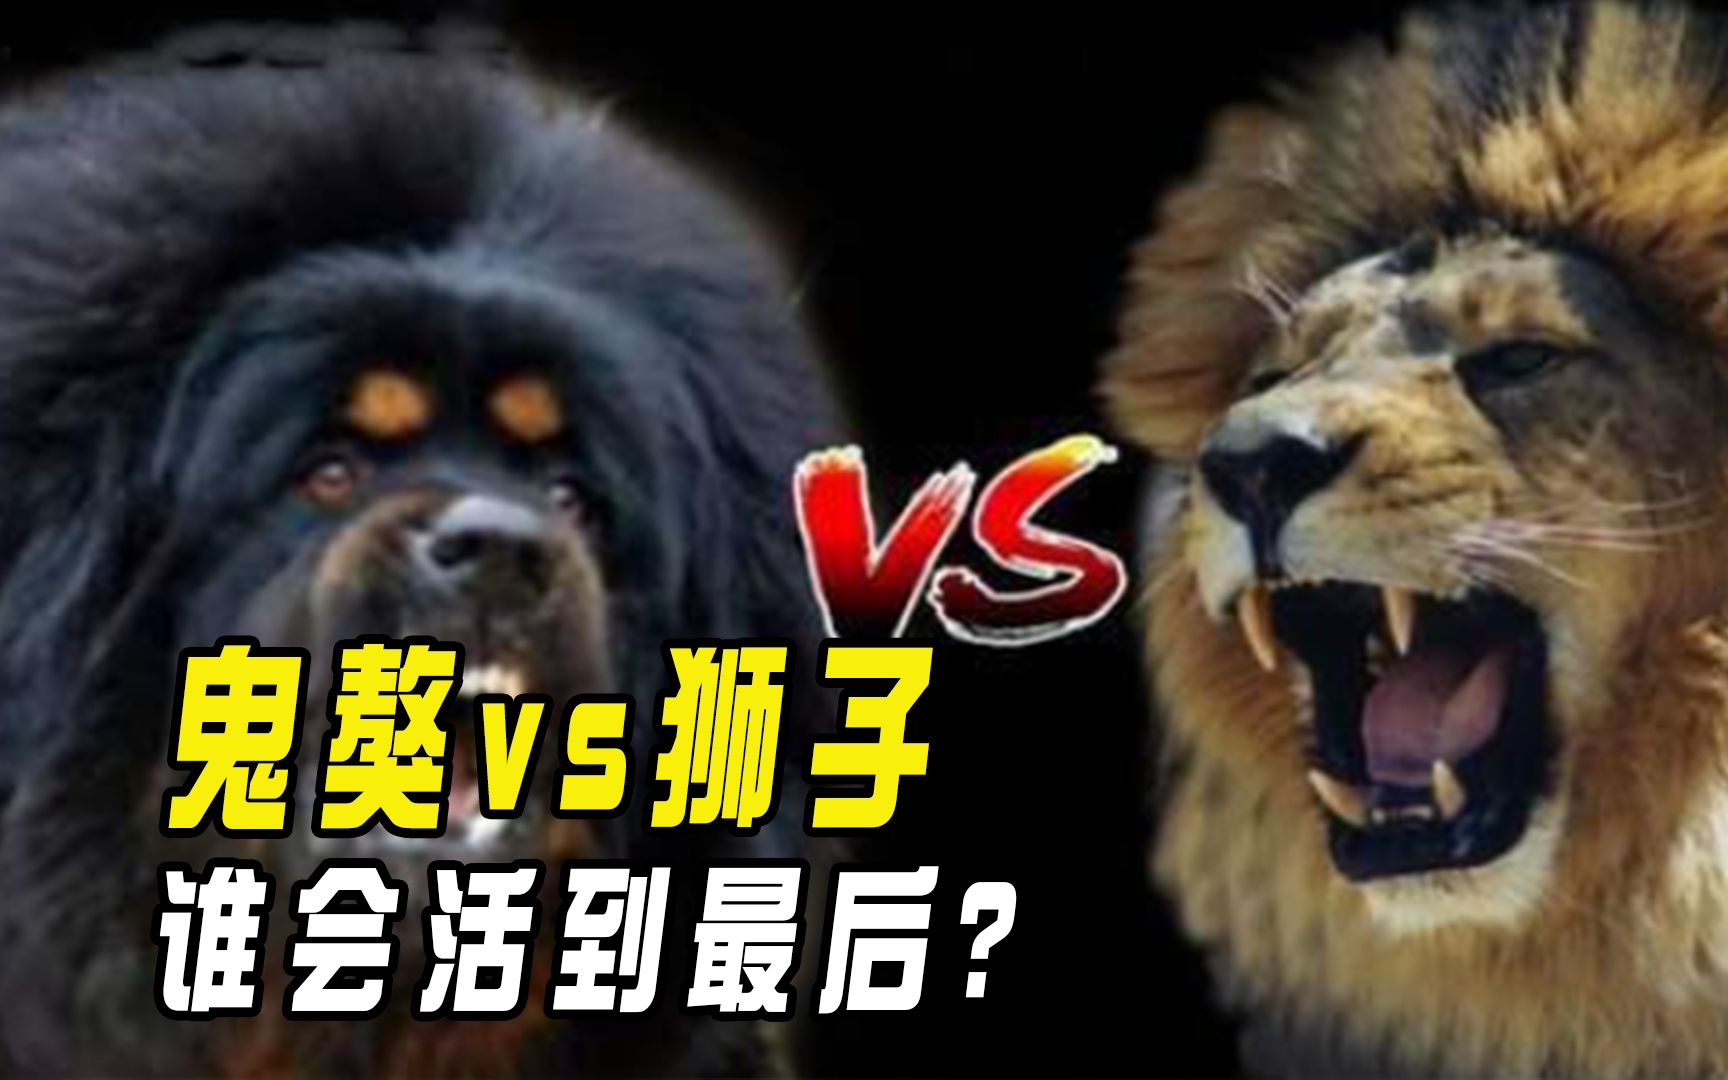 藏獒之王鬼獒pk百兽之王狮子,谁会获得战斗的胜利呢?